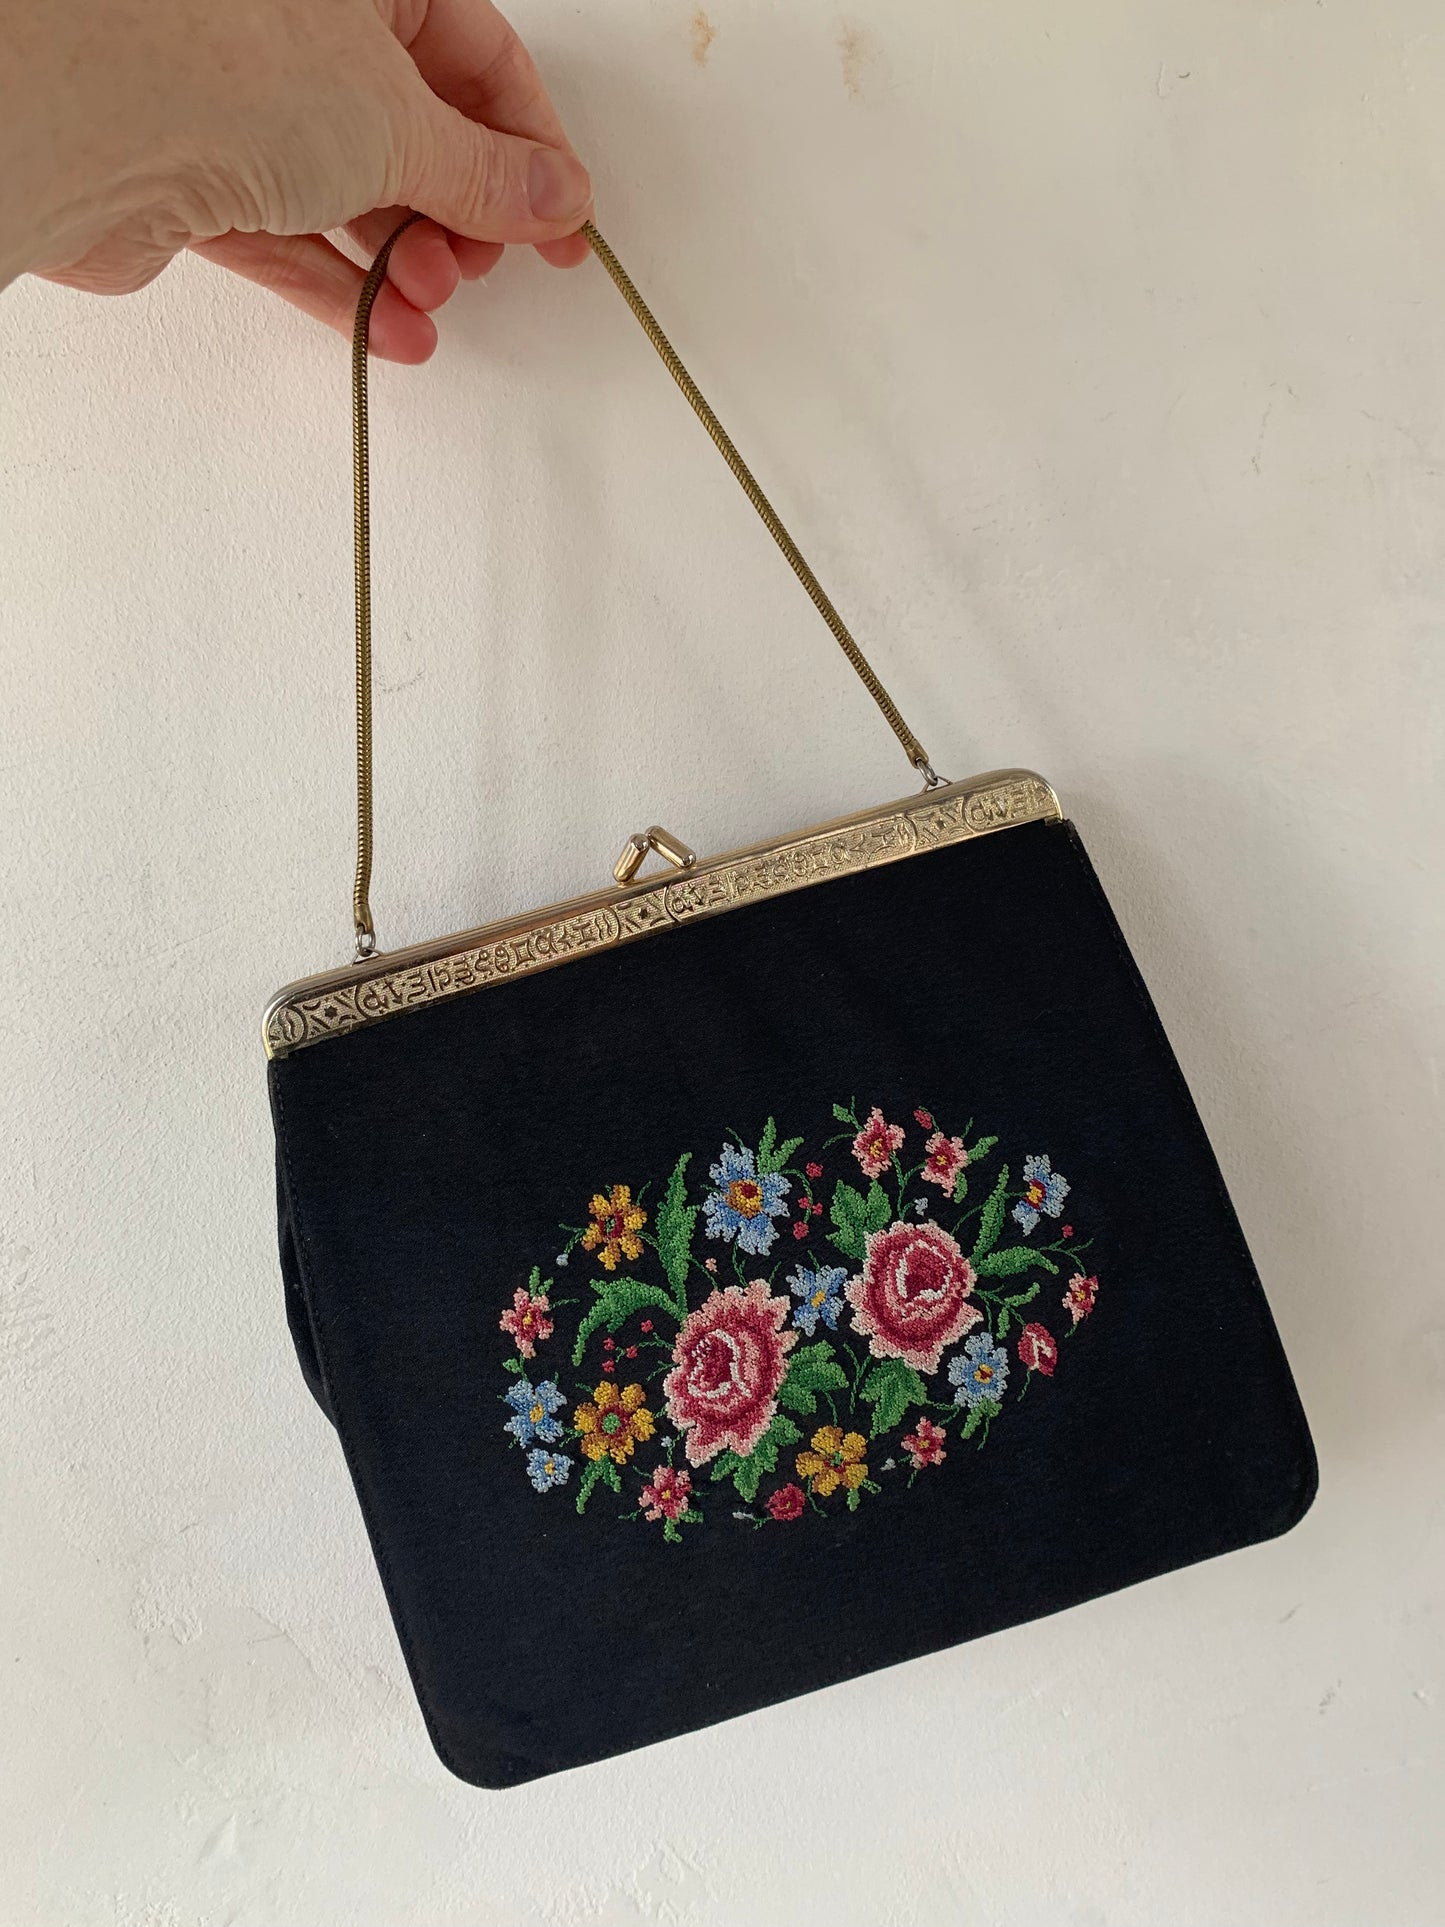 Vintage 1950s Black and Gold Embroidered Bag SALE